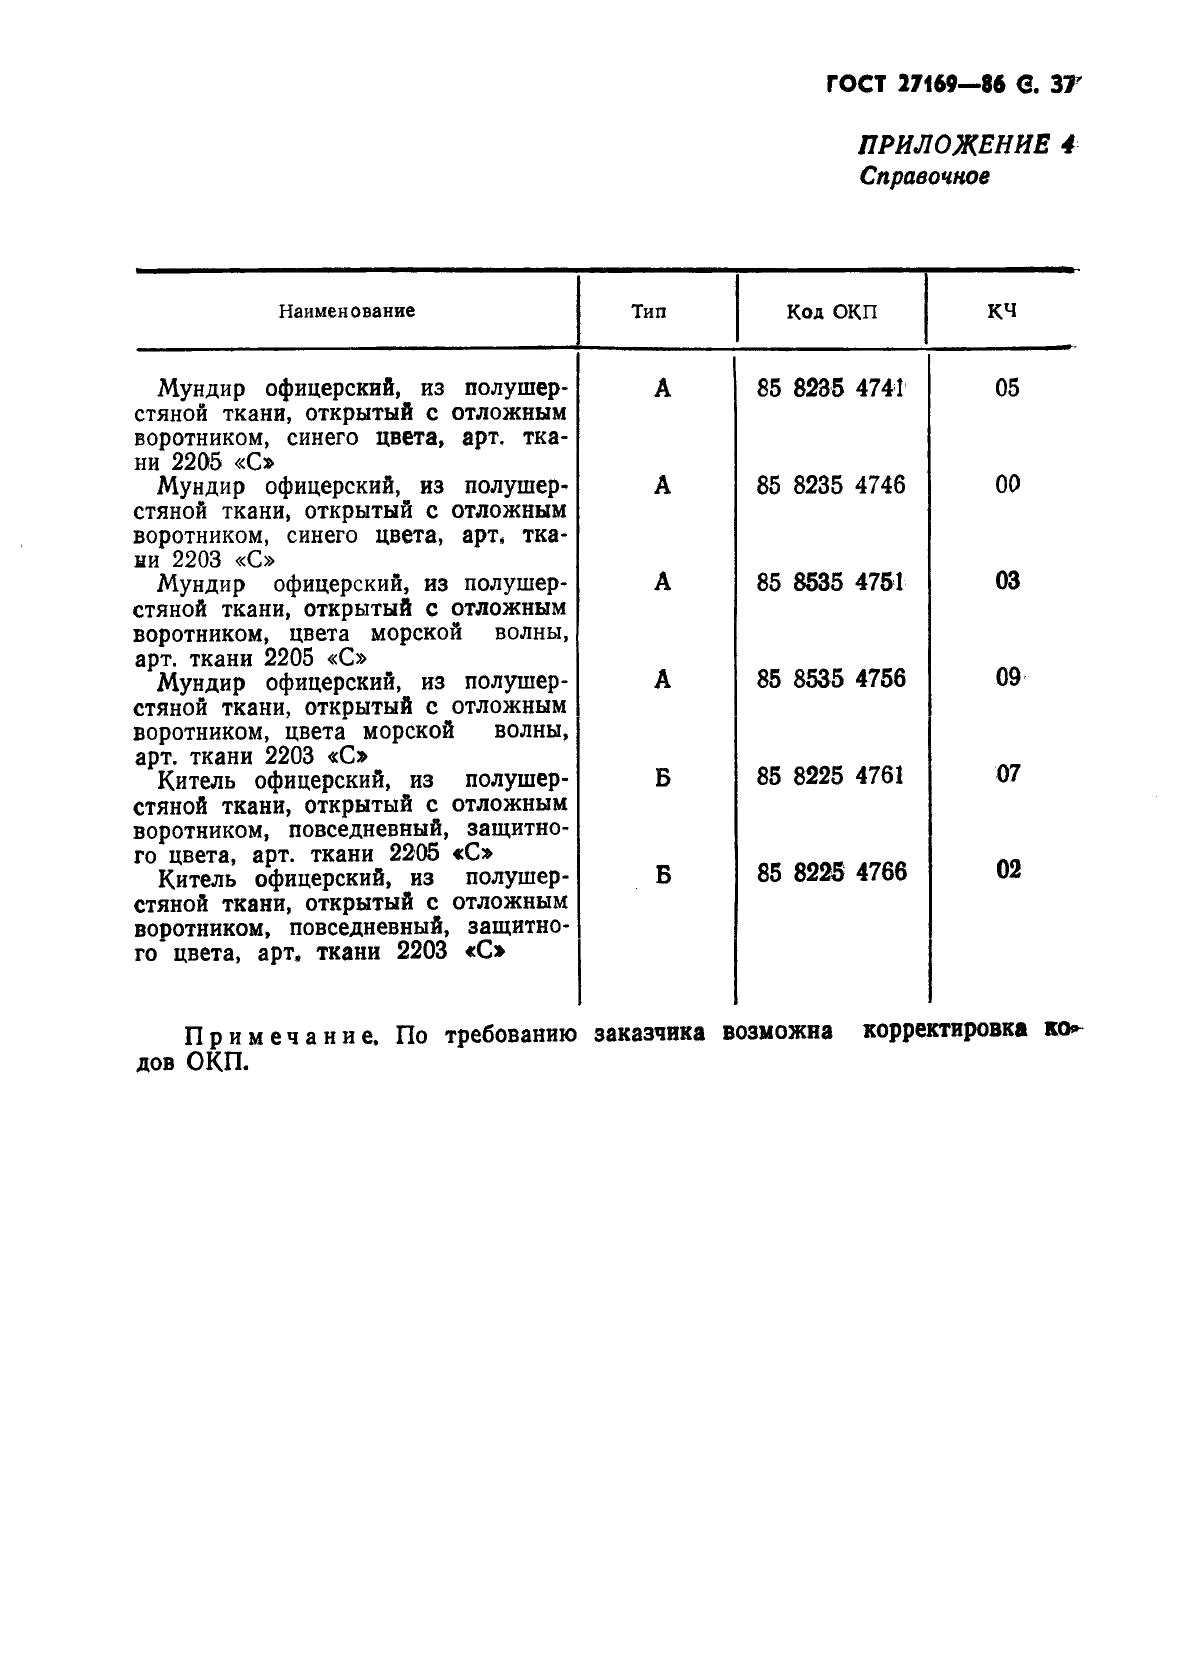 ГОСТ 27169-86 Мундир и китель для офицеров и прапорщиков Советской Армии. Технические условия (фото 39 из 42)